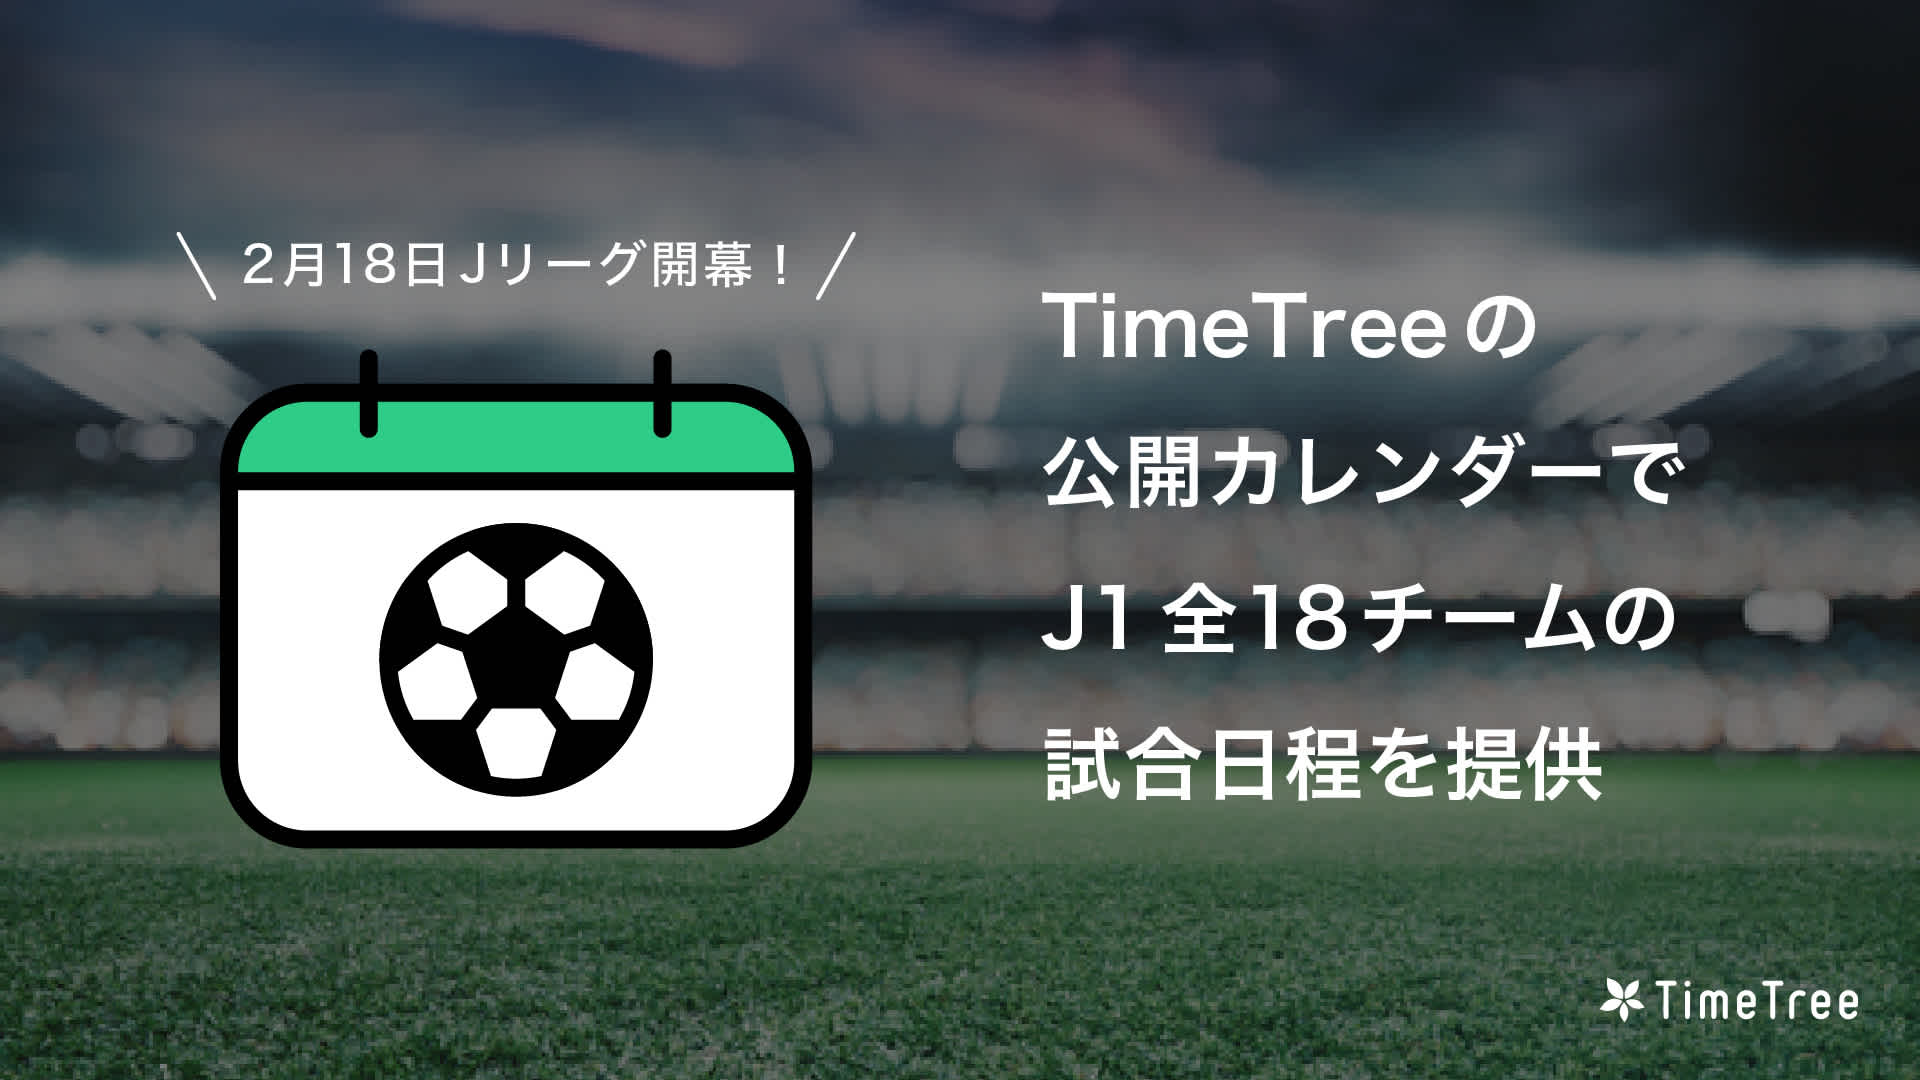 2月18日 Jリーグ開幕 Timetree 公開カレンダーで J1全18チームの試合日程を提供 Timetree